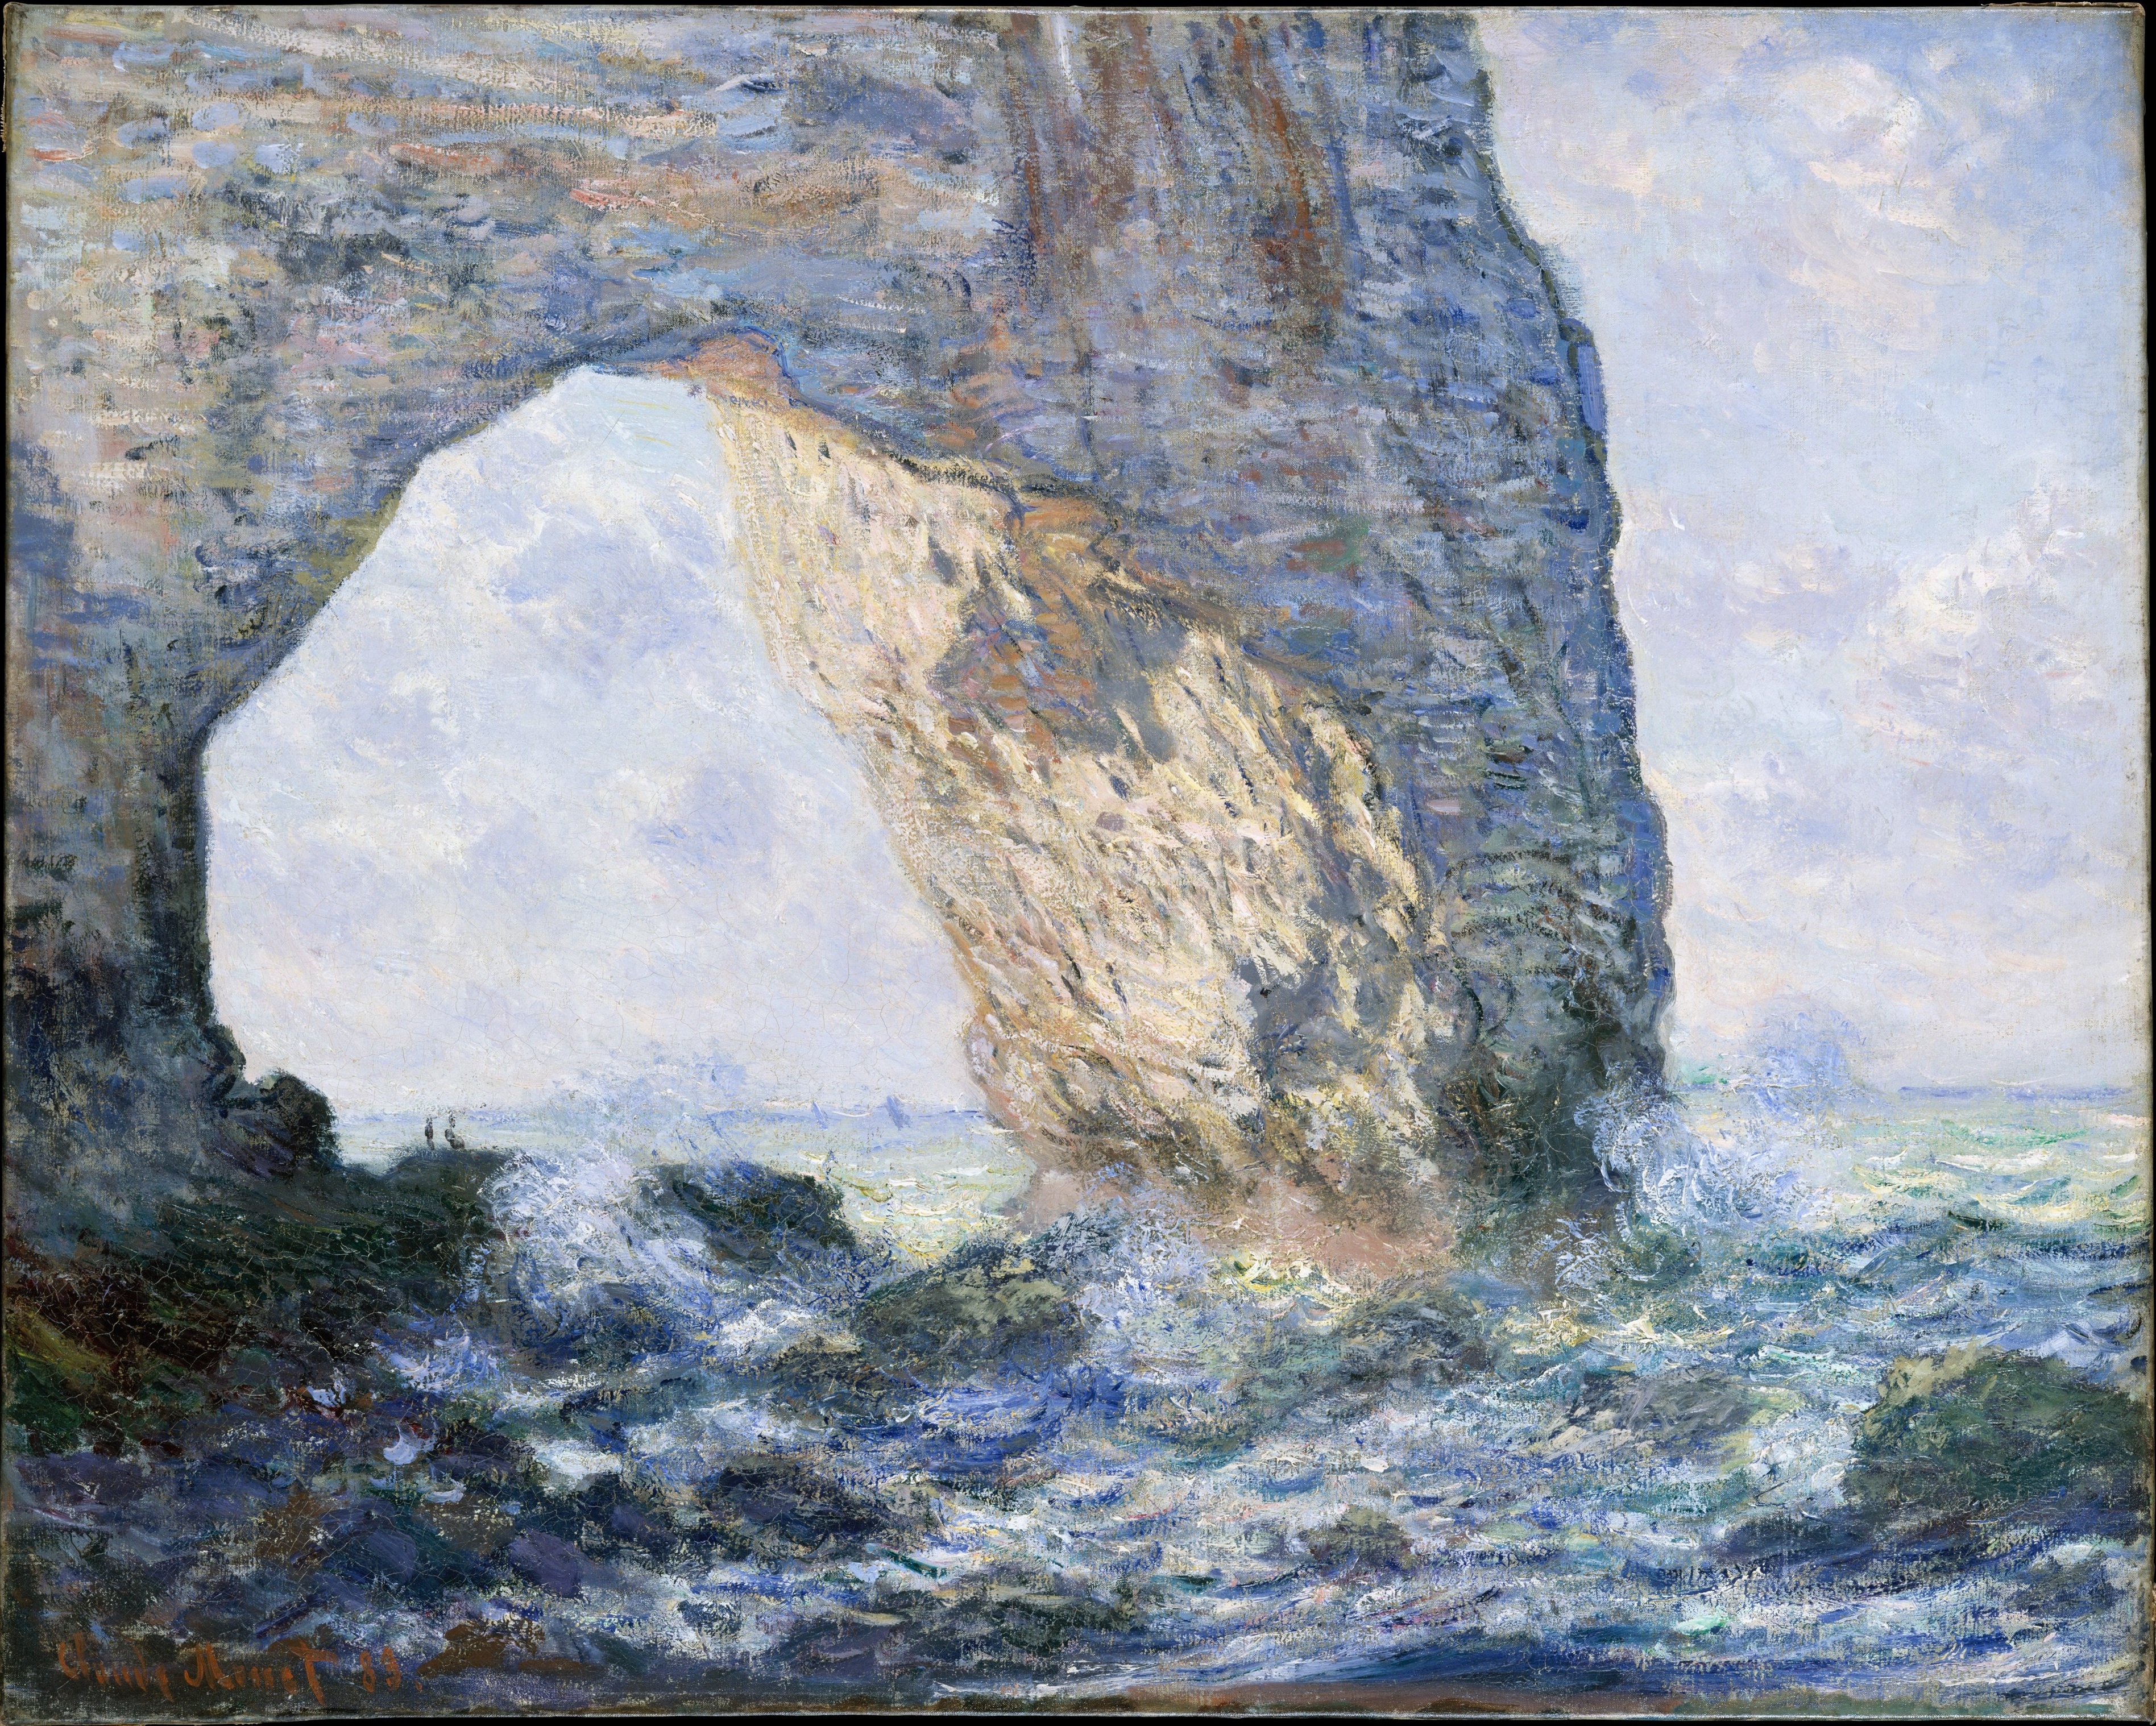 La Manneporte by Claude Monet - 1883 - 65.4 × 81.3 cm 